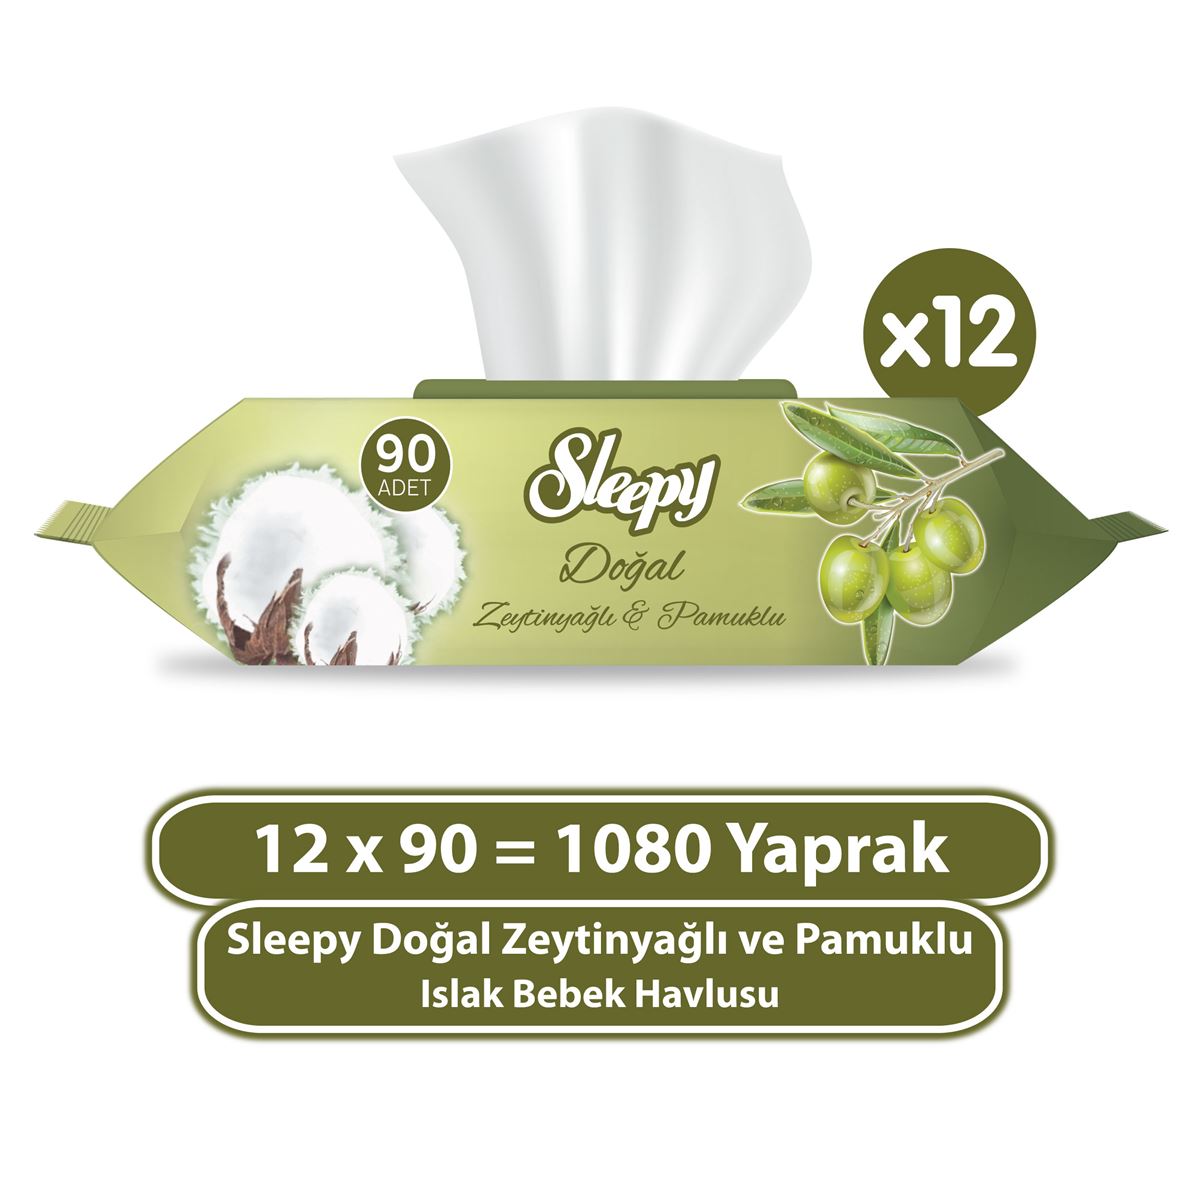 Sleepy Doğal Zeytinyağlı ve Pamuklu Islak Bebek Havlusu 12X90 (1080 Yaprak)